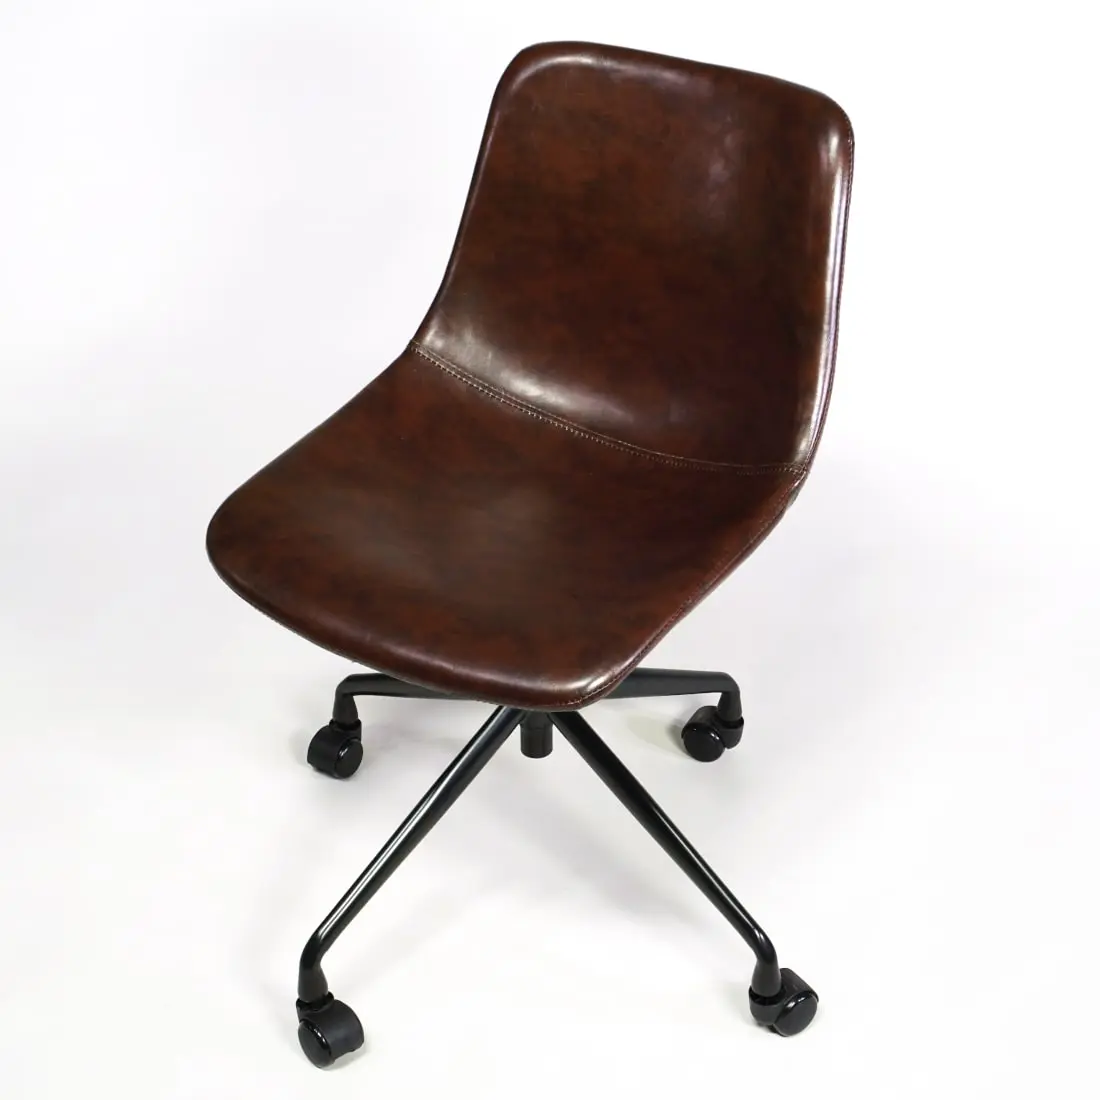 Stuhl für den Schreibtisch zuhause auf Rollen, Farbe braun, hoeenverstellbar und drehbar